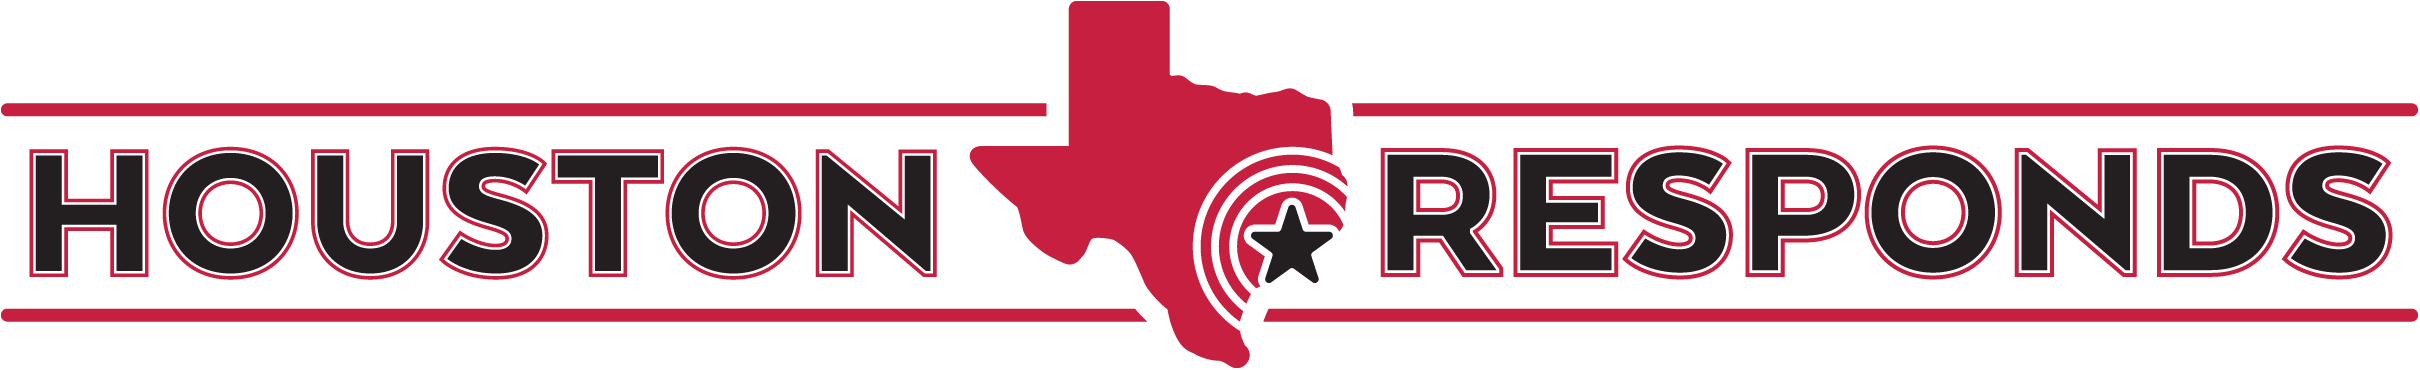 Houston Responds logo